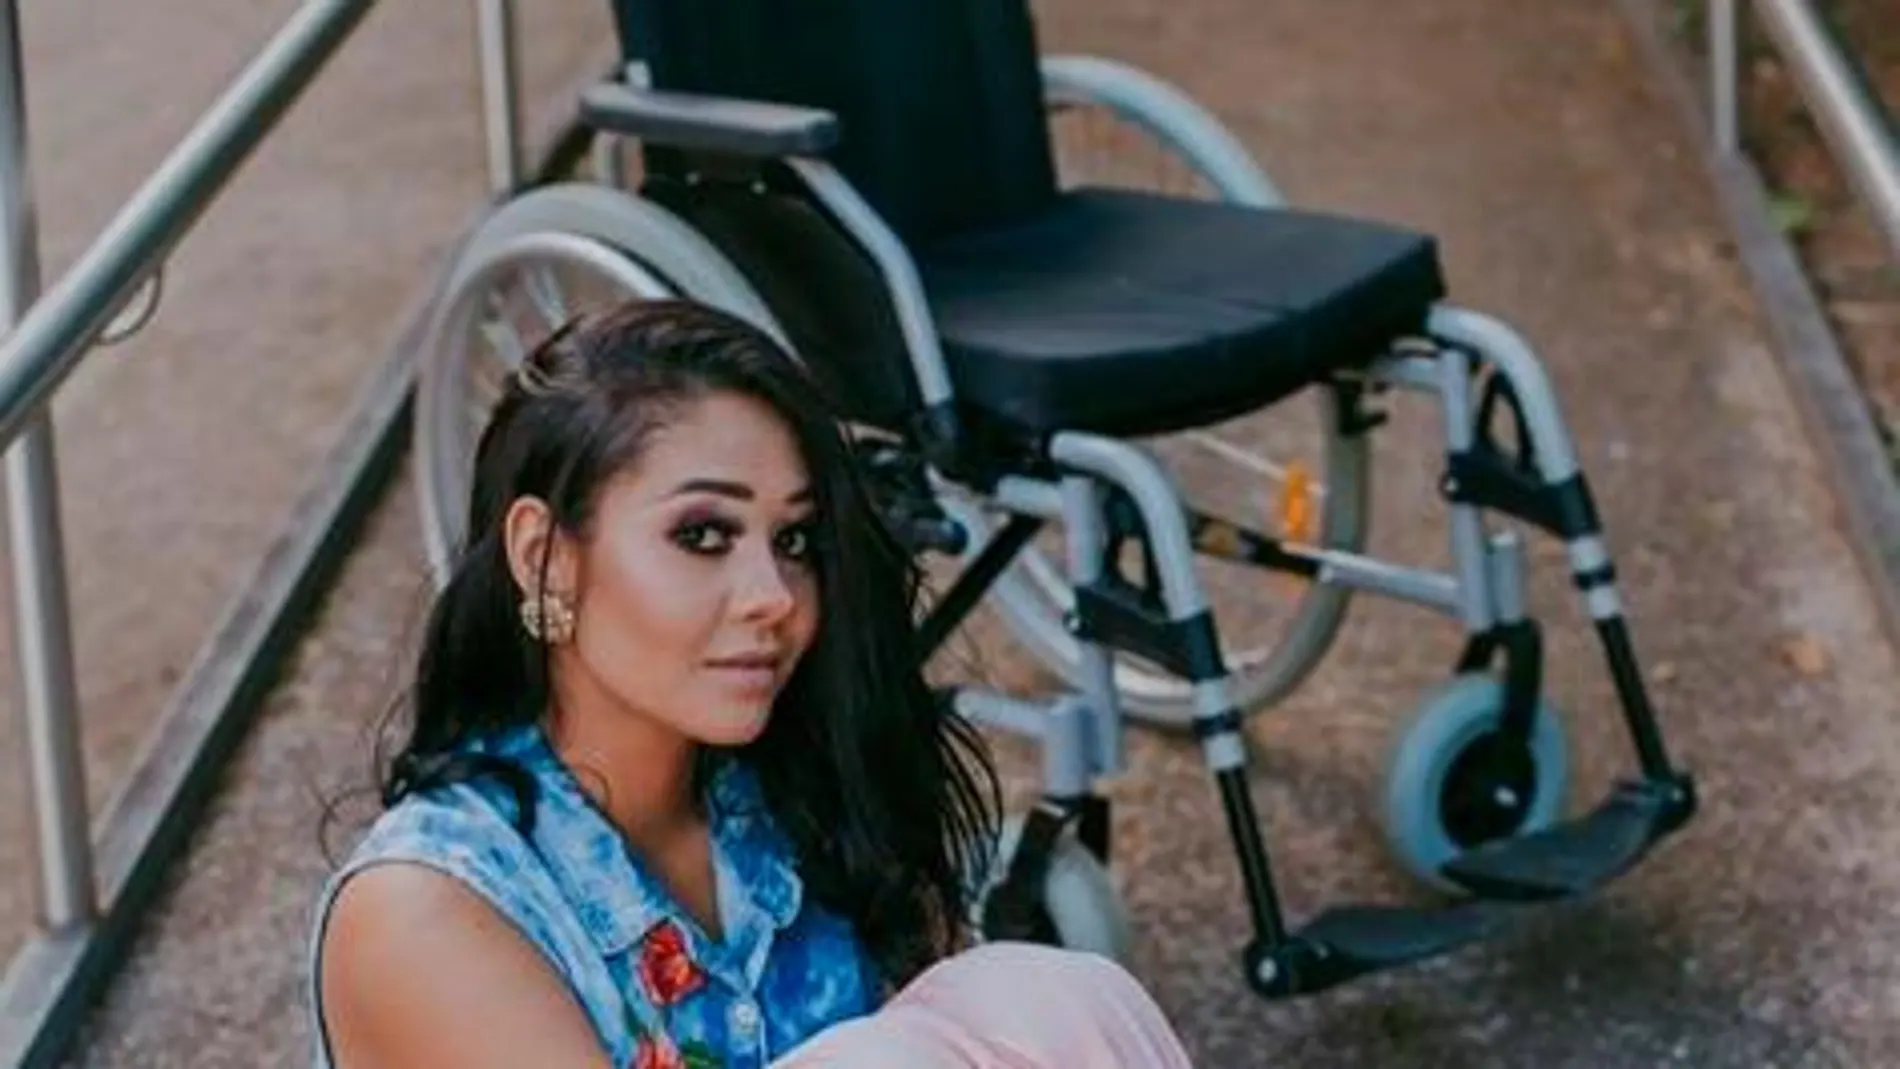 Layane Dias posa junto a su silla de ruedas, en su perfil de Instagram